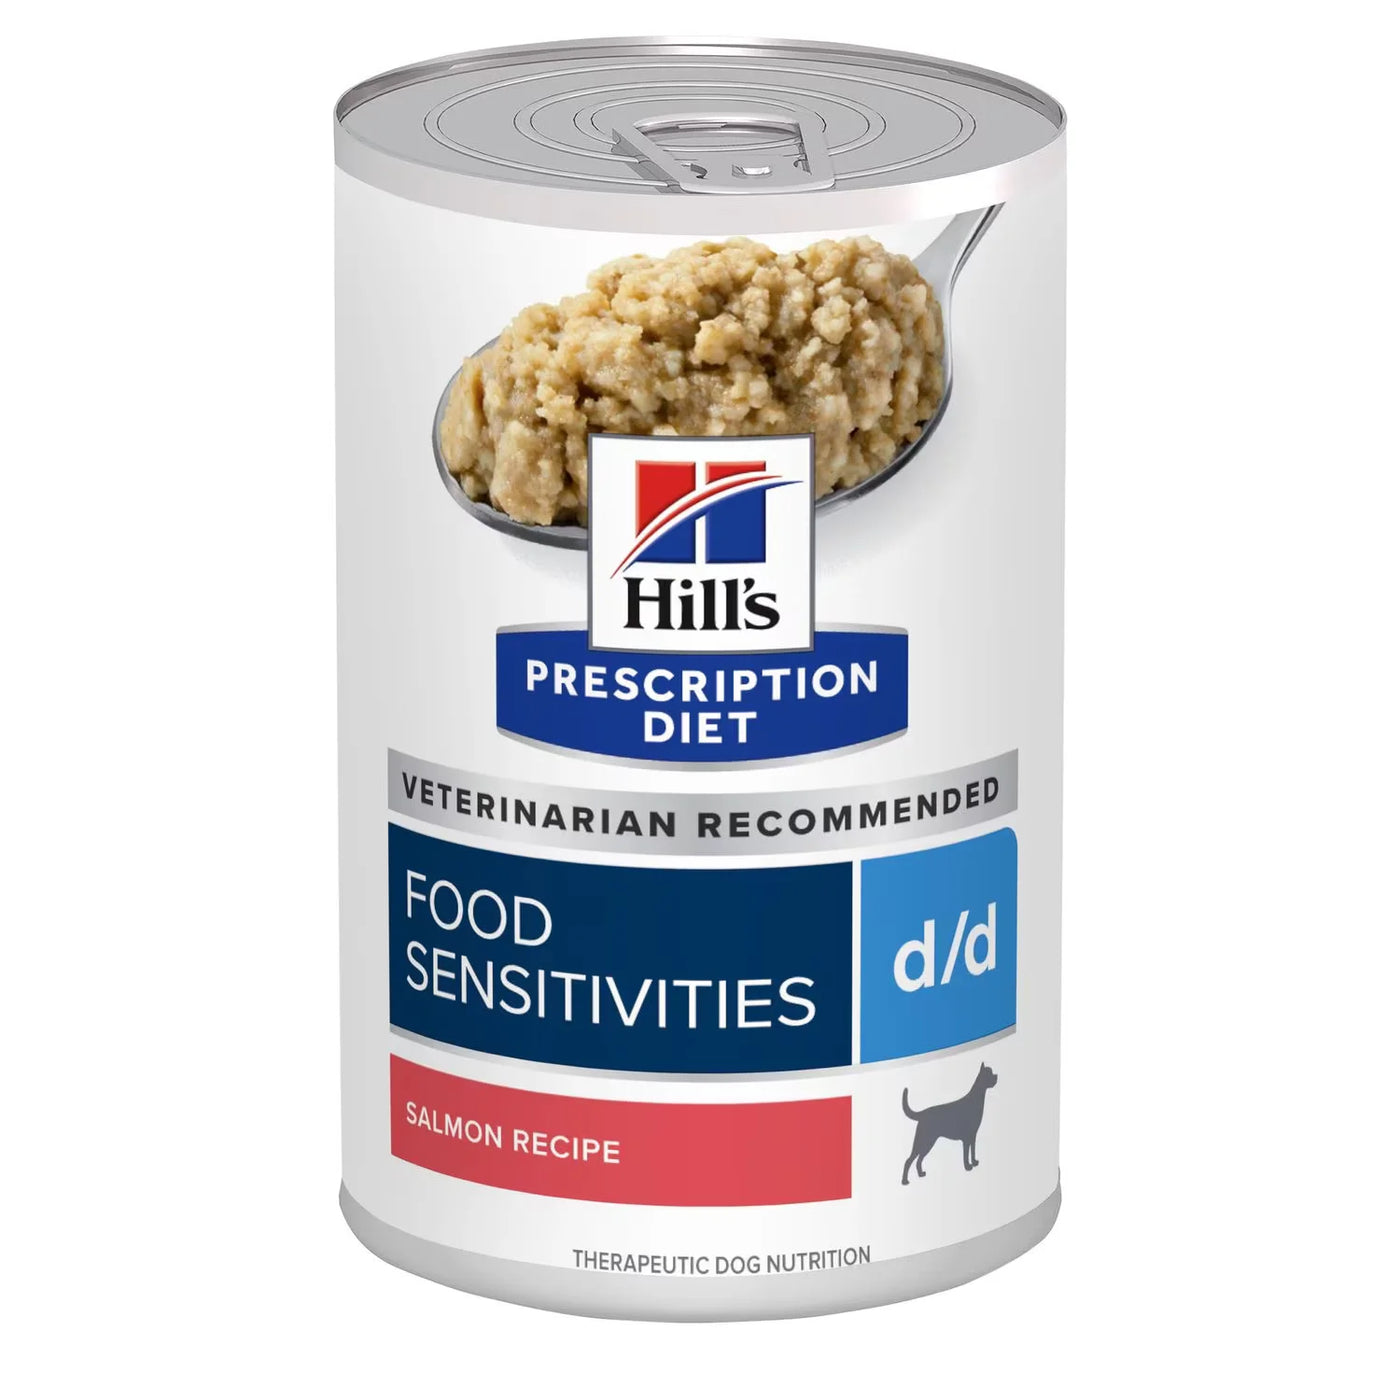 Hill's 希爾思處方食品 - d/d 犬用食物/皮膚敏感護理配方罐頭 (三文魚味) 13安士